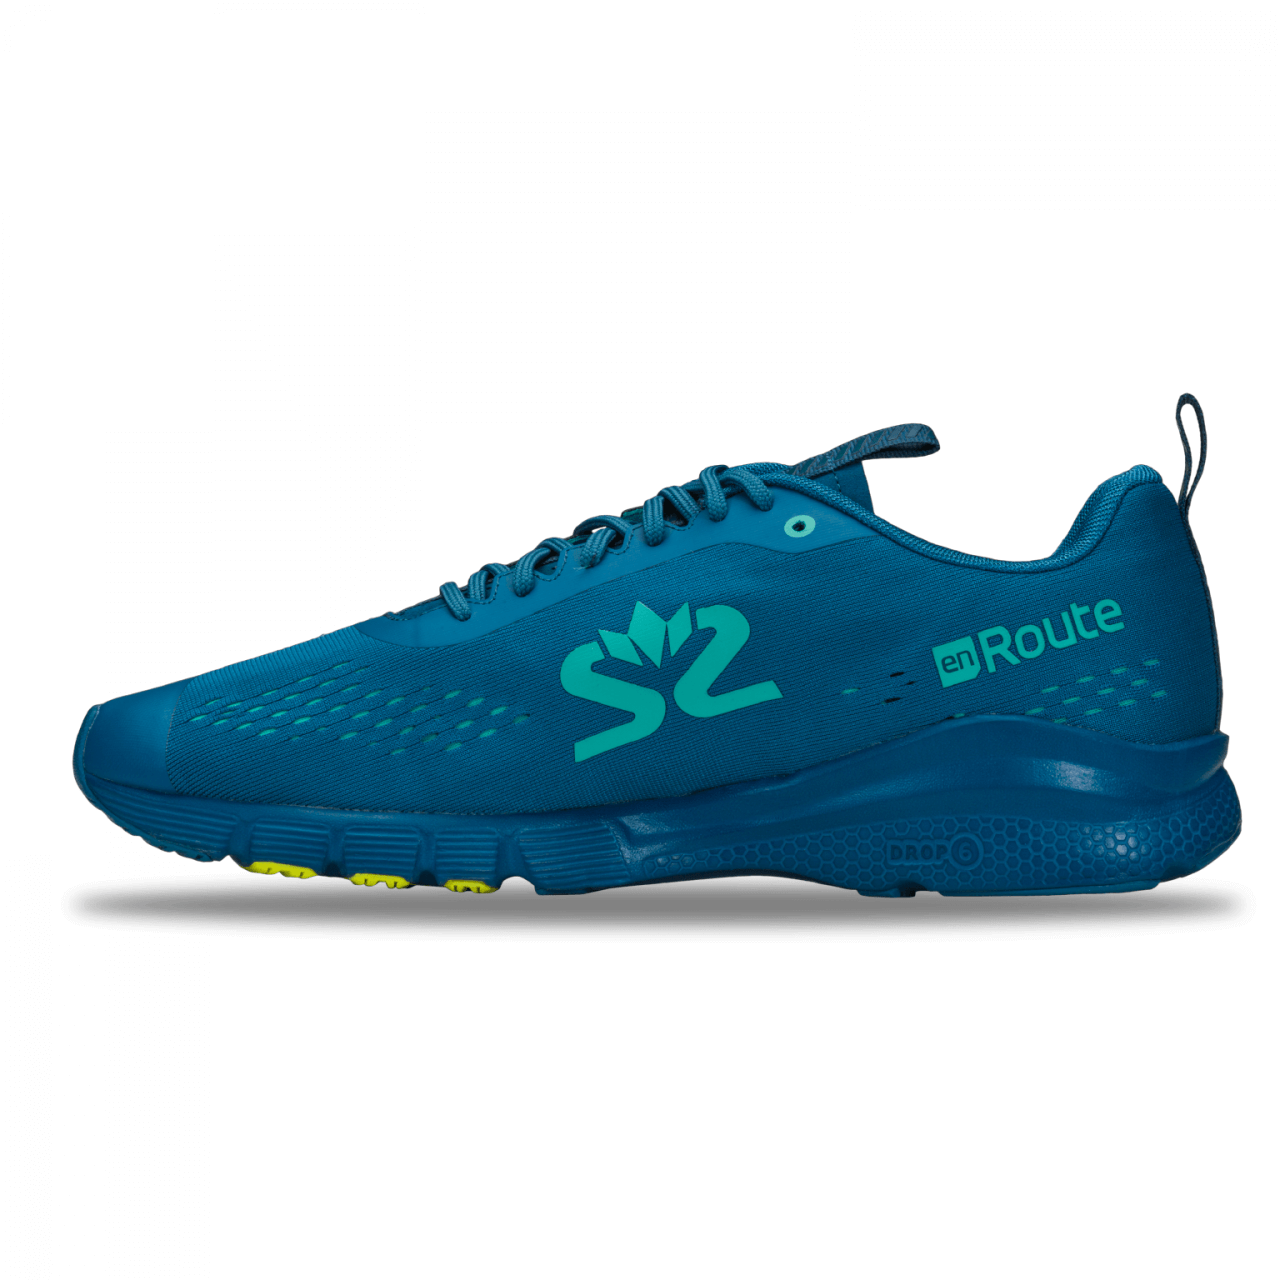 Pantofi de alergare pentru bărbați SALMING enRoute 3 Men Digital Teal Blue/Bio Lime